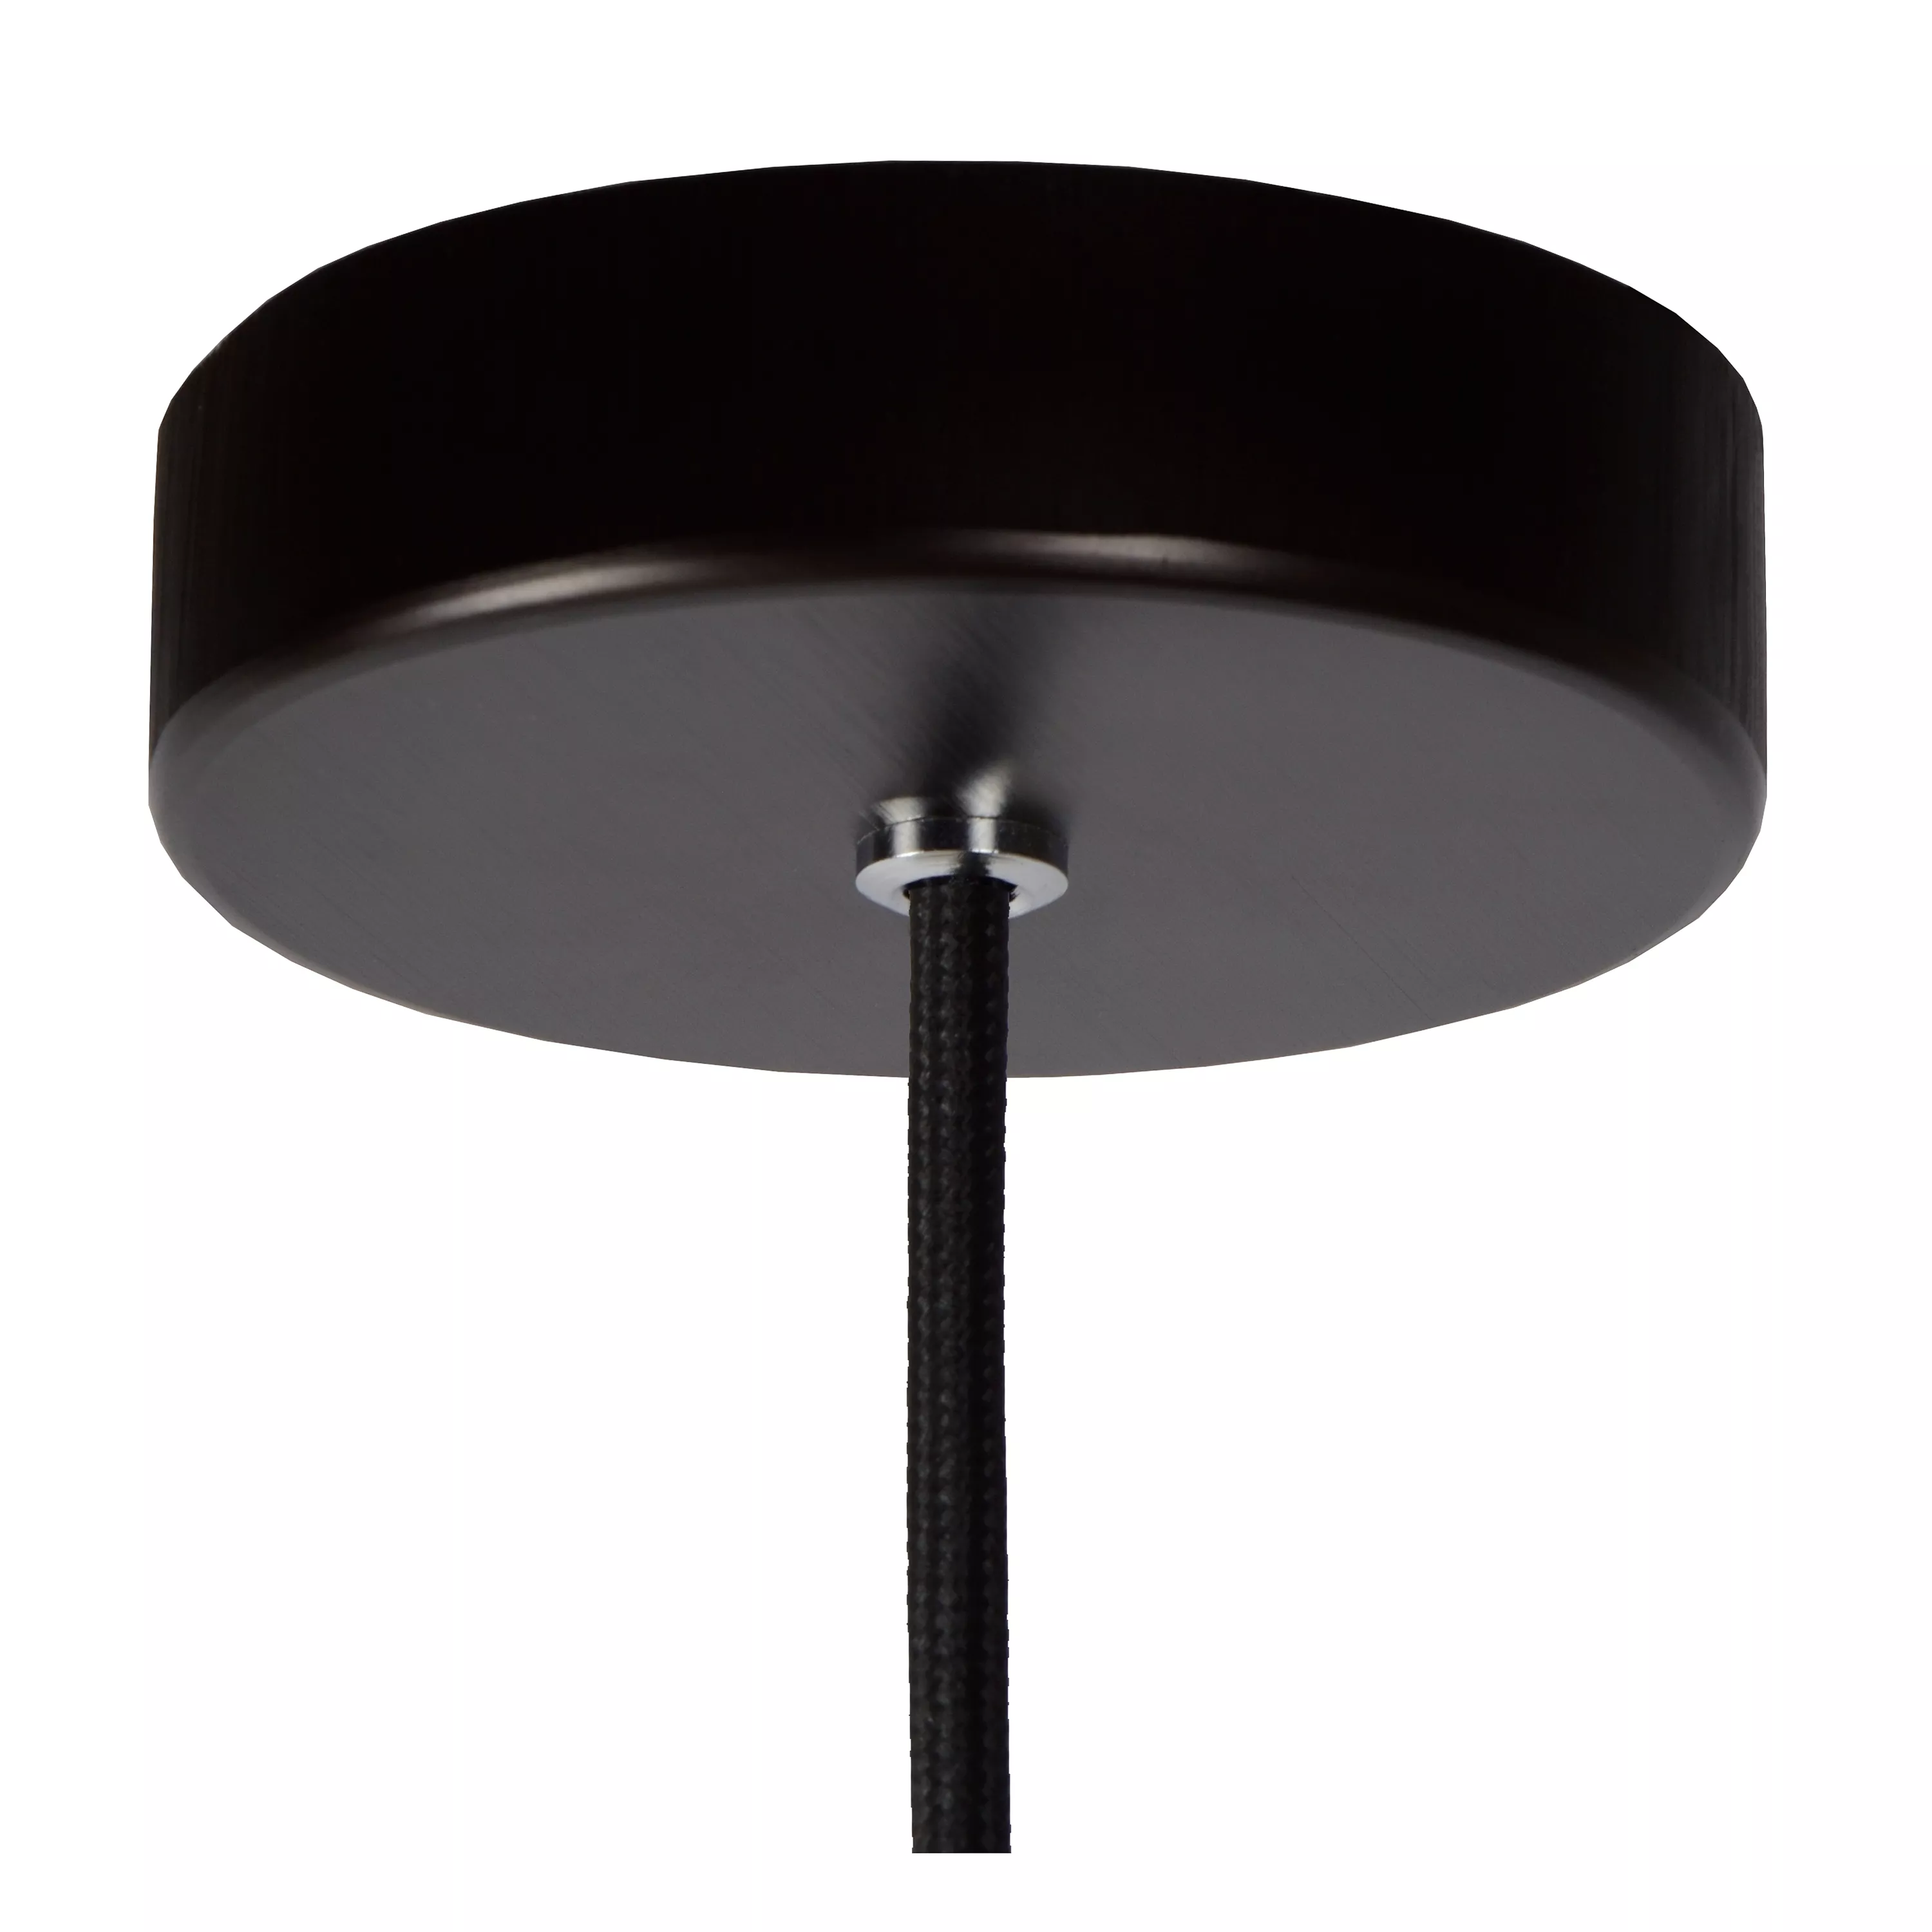 Jednoduché závěsné svítidlo Zino s poutavým designem v černém provedení s kouřovým sklem. Doplňte o dekorativní žárovku.